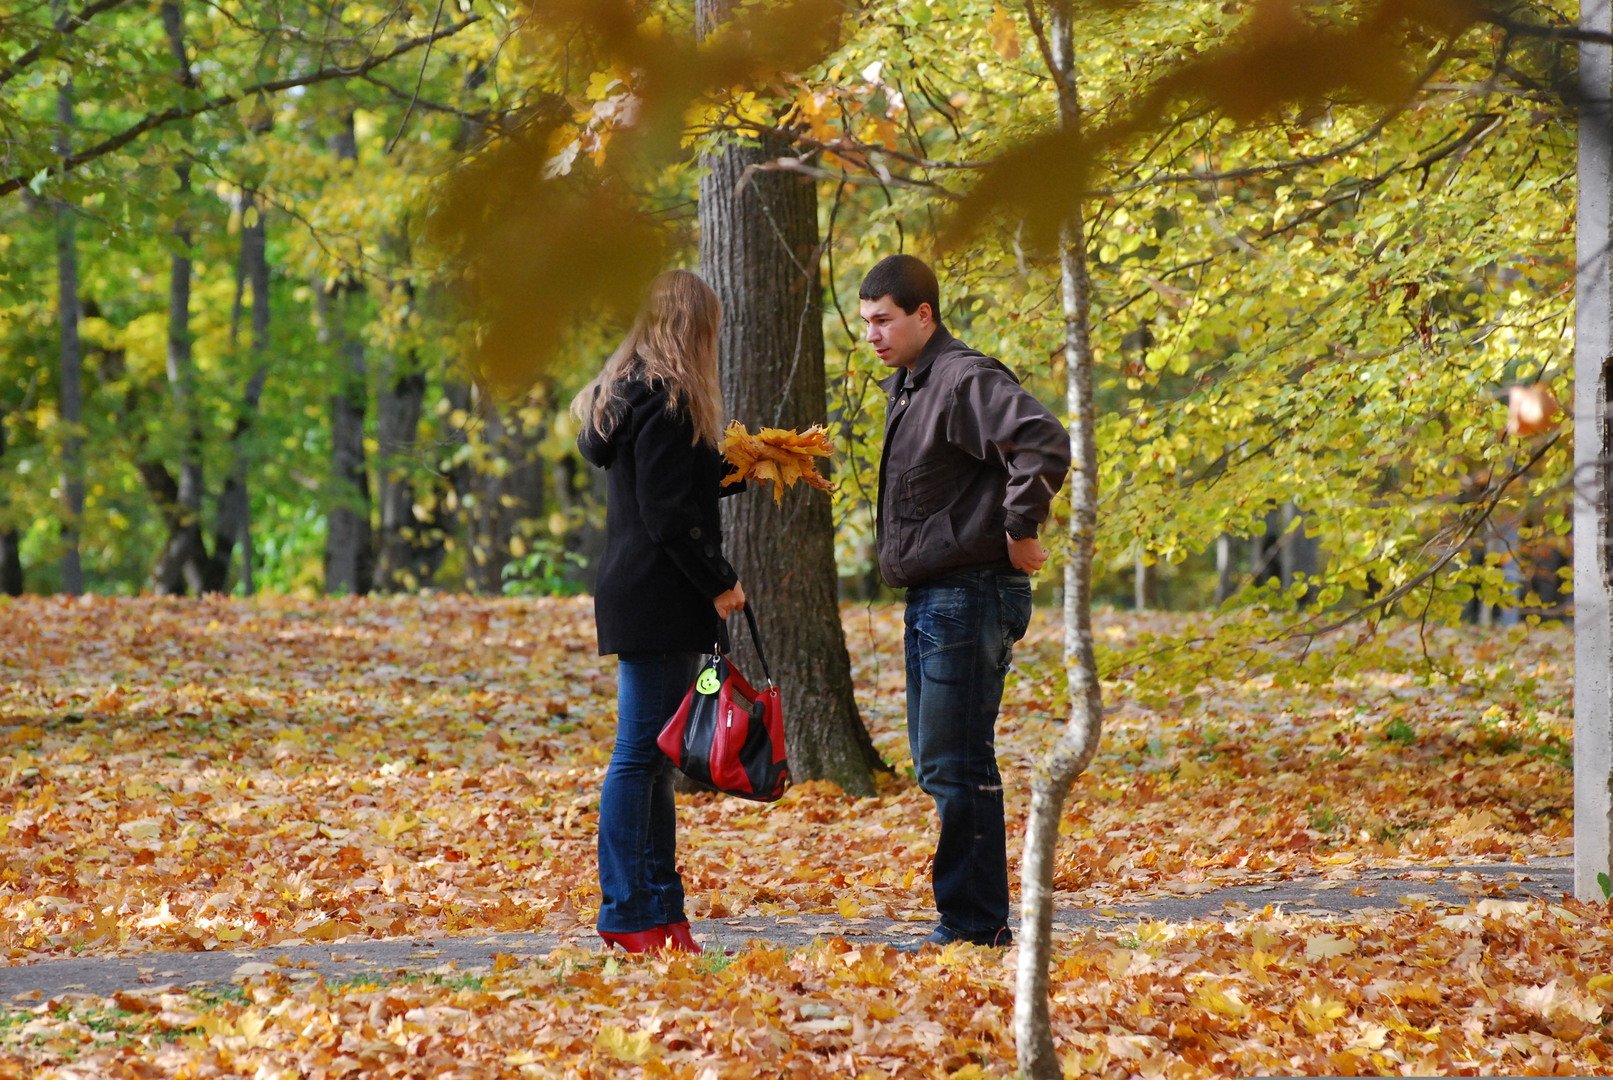 Жизнь людей осень. Осень фото реальные с людьми. Музыкант в осеннем парке. Музыкант играет в осеннем парке.